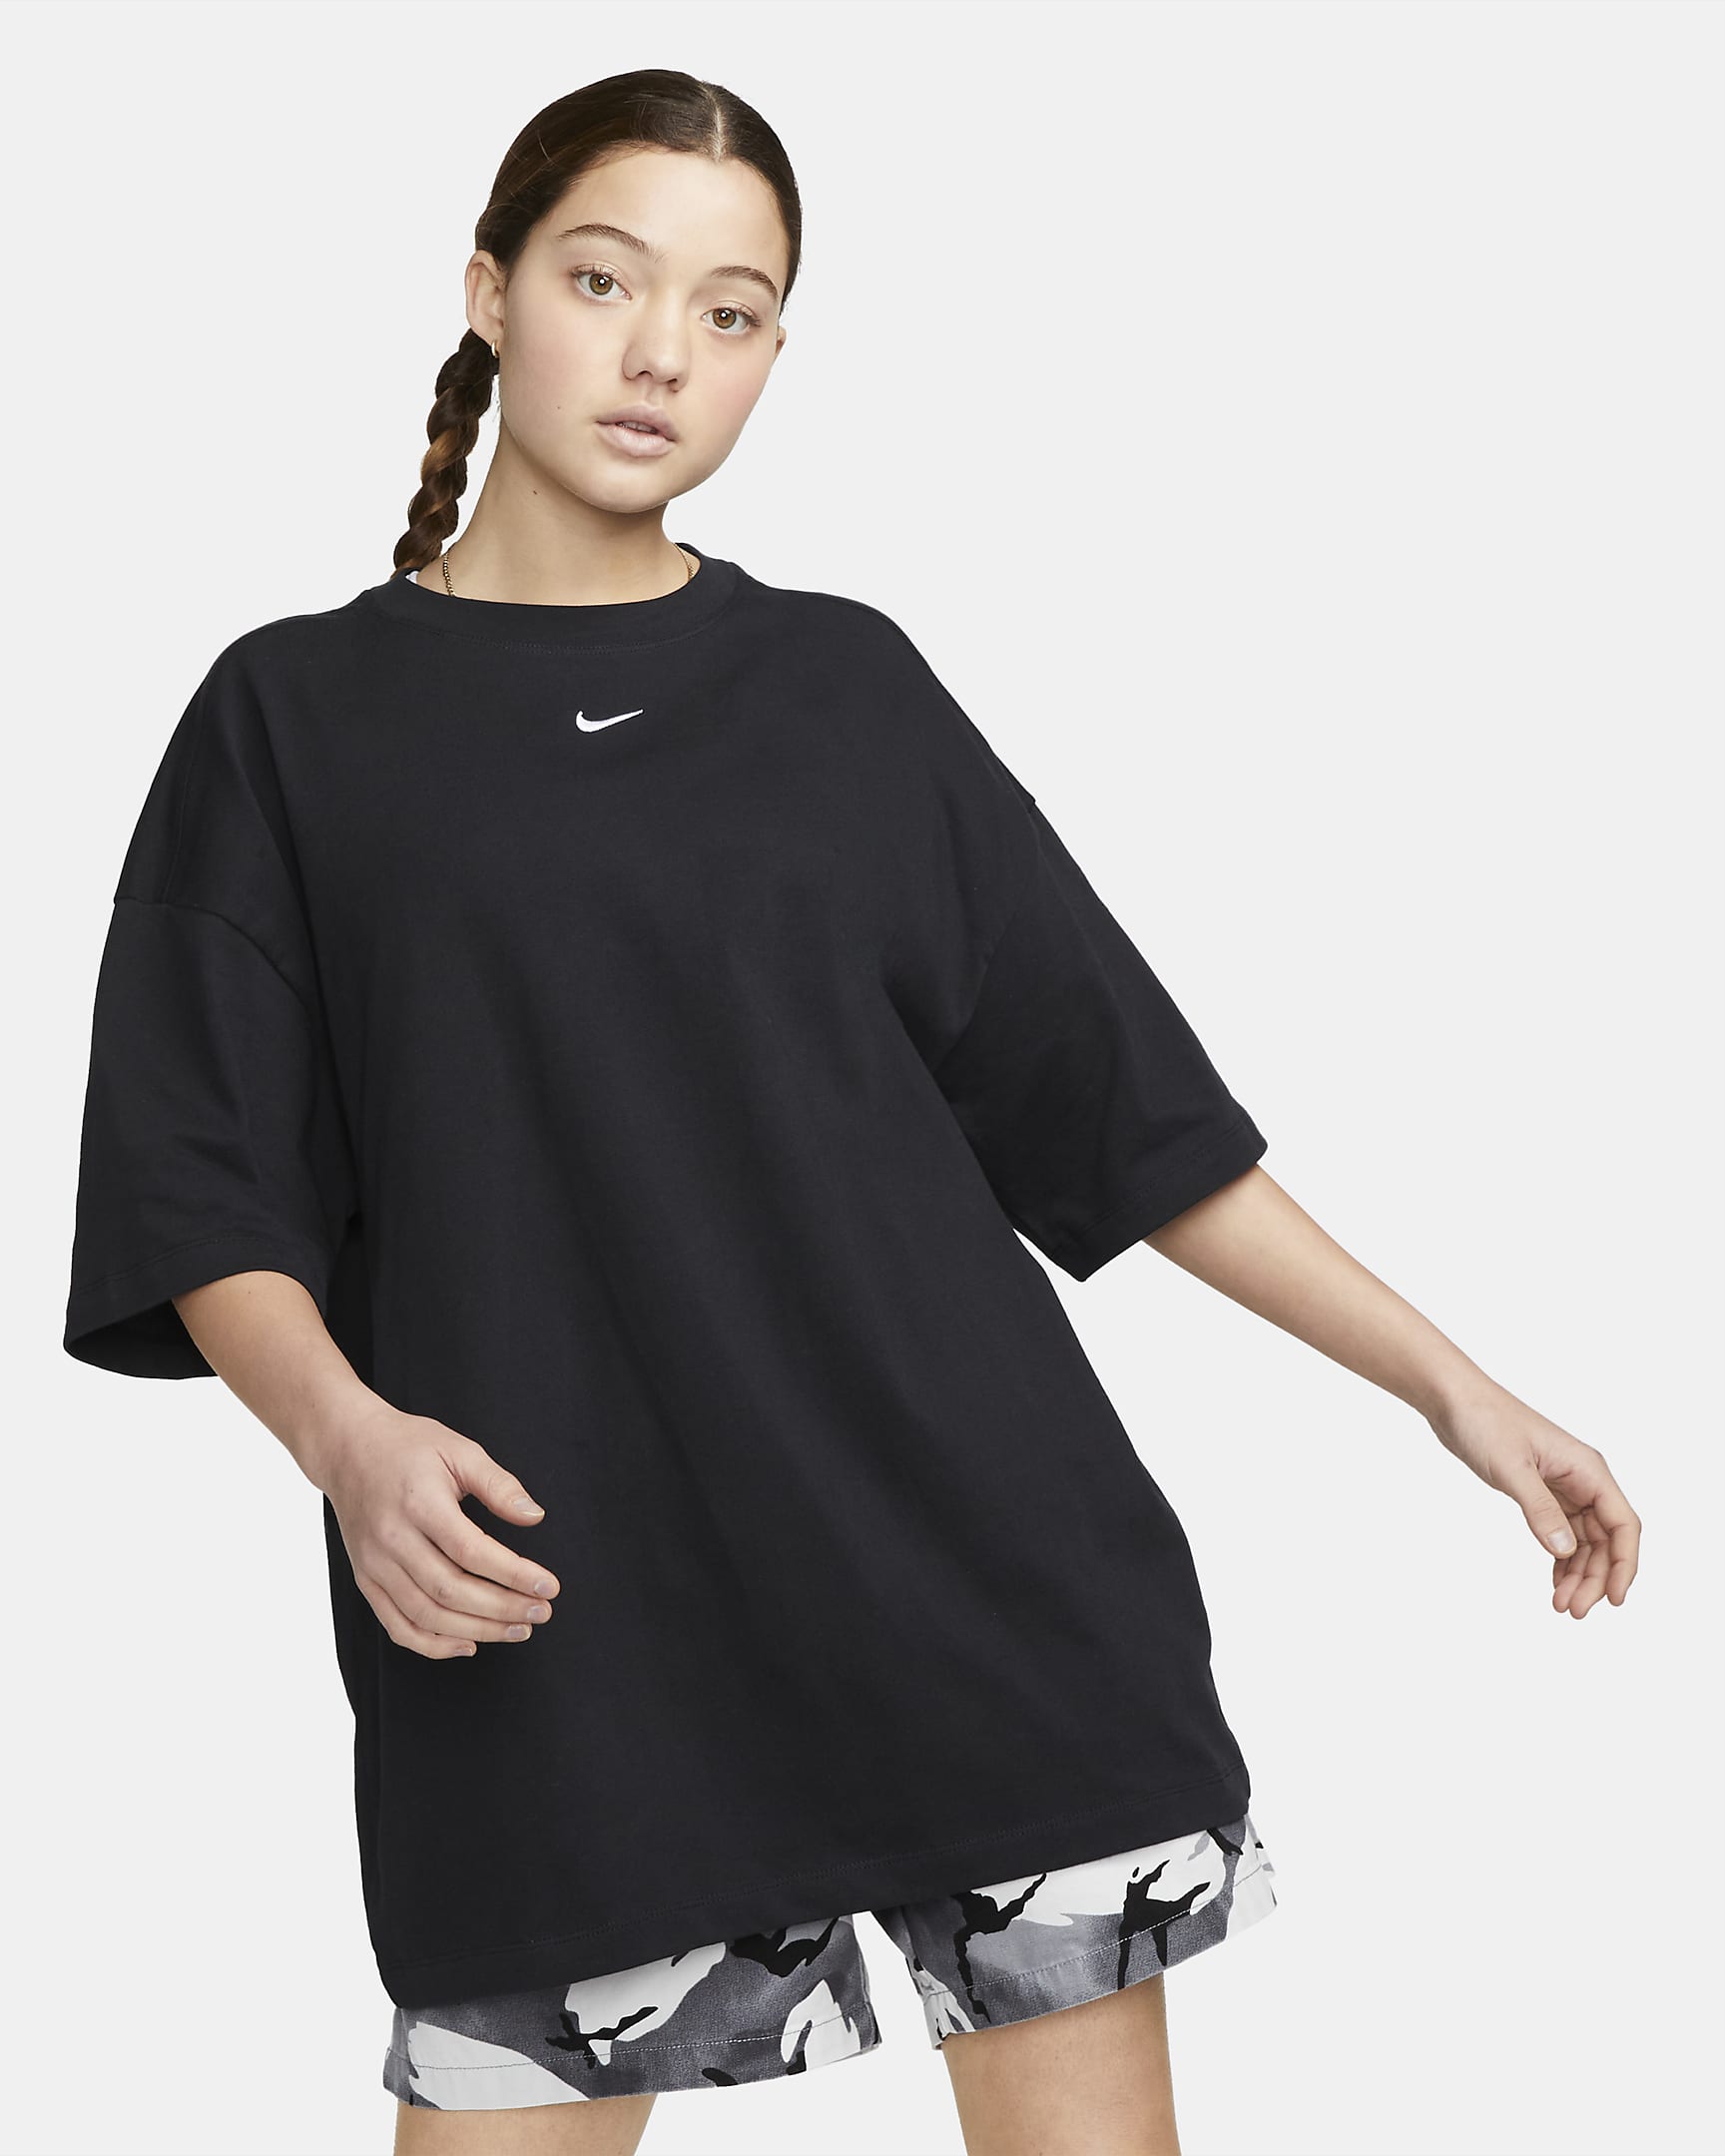 Playera Nike Sportswear Essential oversized para mujer - Negro/Blanco